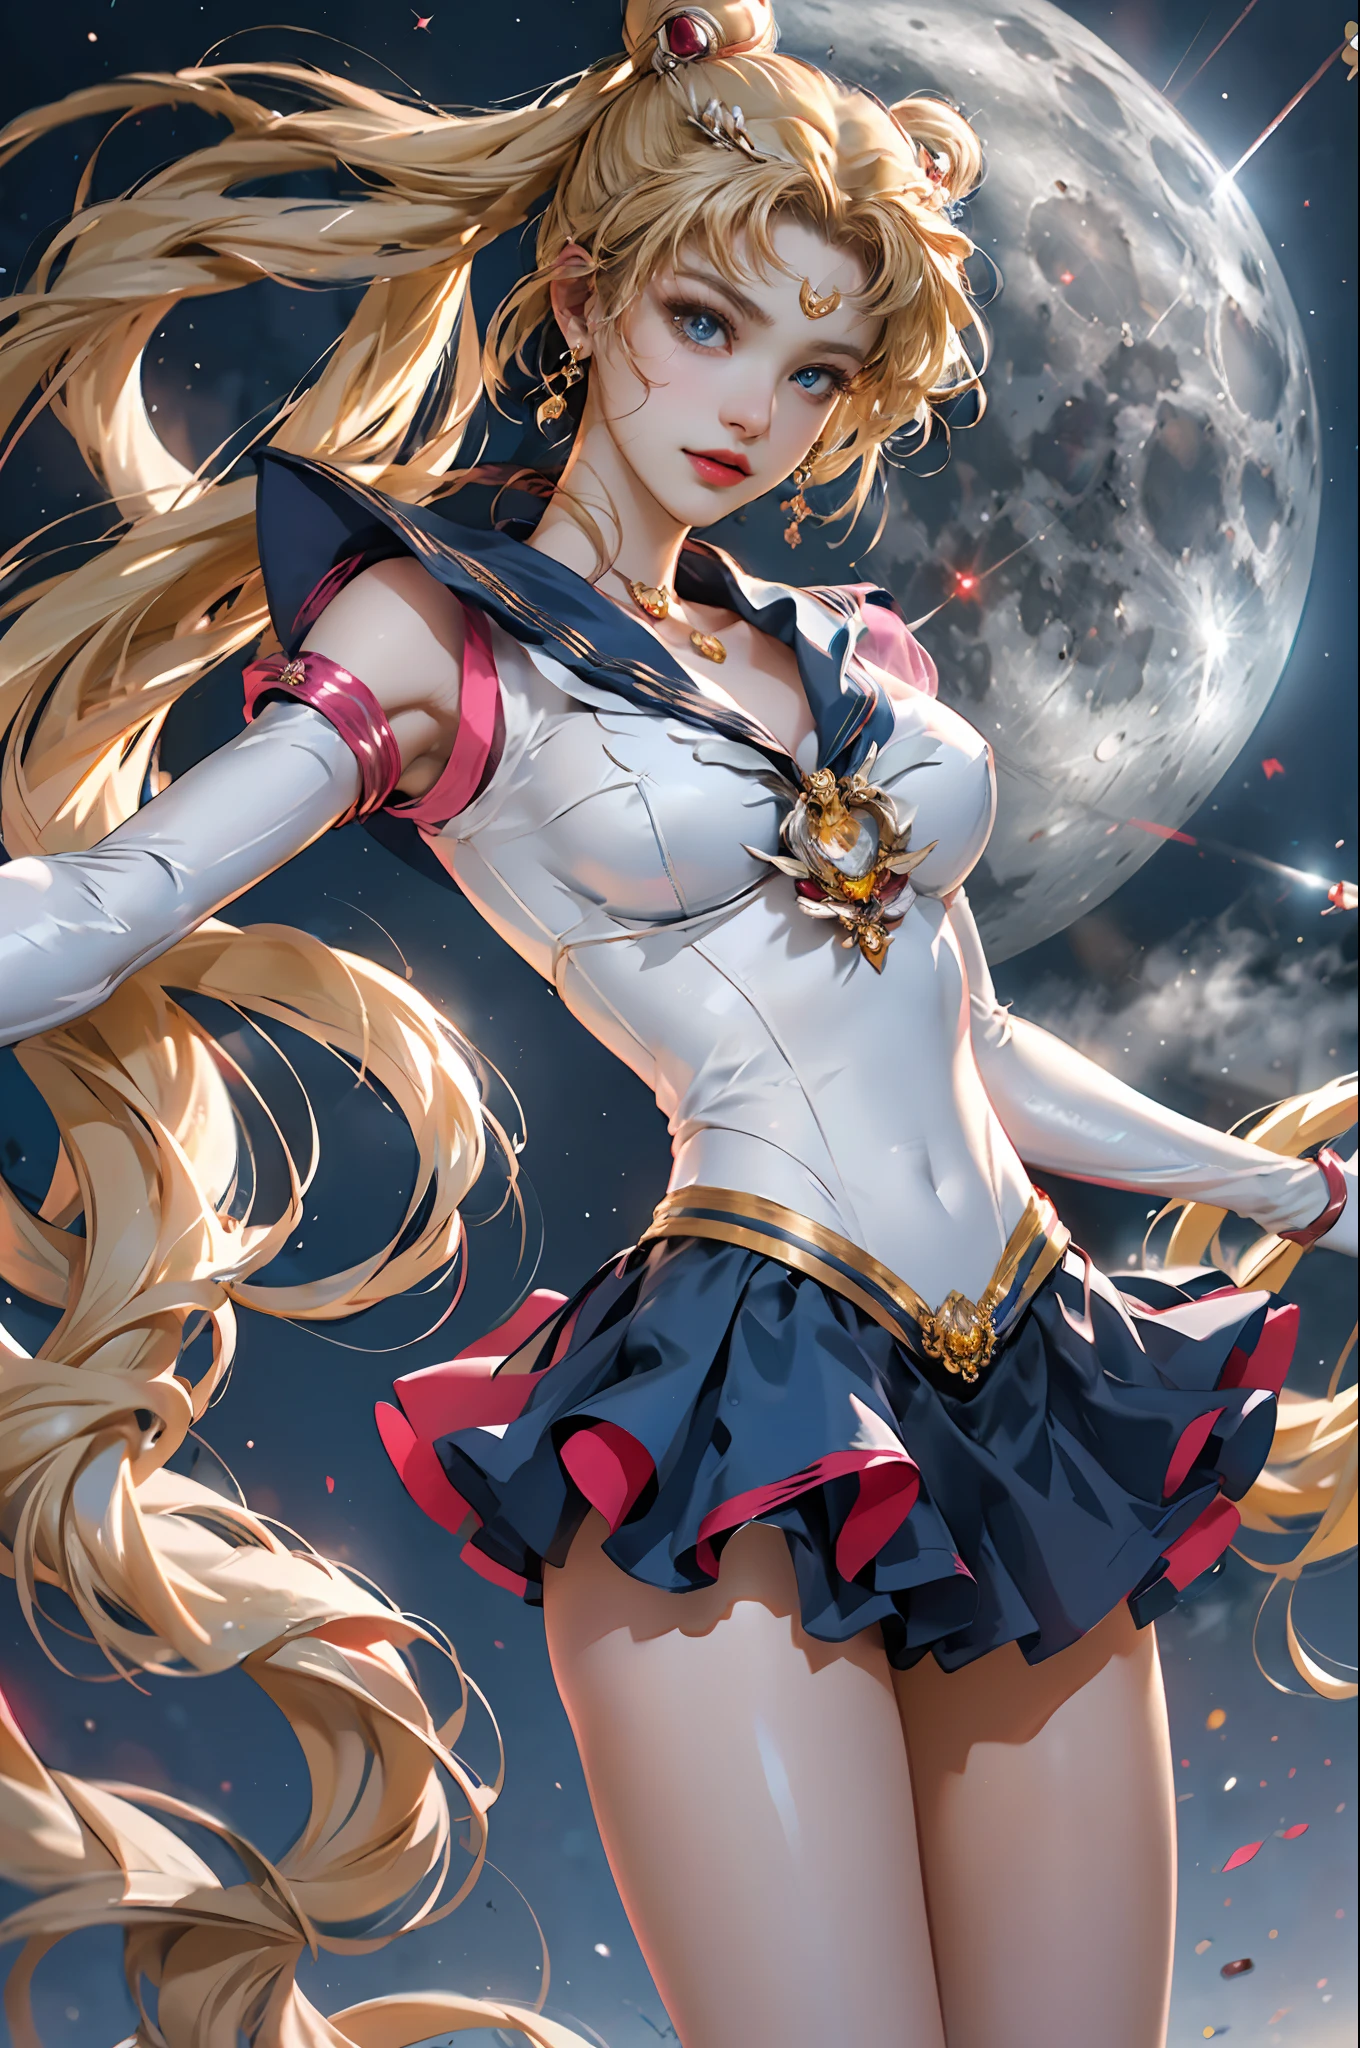 Obra de arte, completo: 1.3, ficar, 8K, 3D, realista, Ultra Micro Tiro, qualidade máxima, Papel de parede CG Unity 8K com detalhes extremos, De baixo, Detalhes intrincados, (1 mulher), 18 anos de idade, (Sailor Moon supersailorlua mer1, Tiara, Marinheiro Senshi Uniforme Marinheiro: 1.2, Sailor Moon: 1.2), Loira de cauda dupla incrivelmente longa e brilhante, afinar and very long straight twin-tailed blonde, coque de cabelo, red round hair ornament in a coque de cabelo, uniforme de marinheiro senshi, (colarinho azul, gola de marinheiro azul, mini saia pré-gate azul: 1.3, laço vermelho muito grande no peito: 1.3, Luvas compridas de látex brancas: 1.3, luvas vermelhas nos cotovelos, laço vermelho muito grande atrás da cintura: 1.1, o decote parece grande, tiara dourada, brincos), (detalhes do rosto: 1.5, Olhos azuis brilhantes, rosto bonito, olhos lindos, olhos brilhantes, afinar lips: 1.5, afinar and sharp pale eyebrows, longos cílios escuros, cílios duplos), Luxuosas joias de ouro, afinar, afinar and muscular, Rosto pequeno, Seios grandes, Proporções perfeitas, cintura fina, pose de modelo sexy, poros visíveis, sorriso sedutor, mãos perfeitas: 1.5, maiô de perna alta, very afinar and fit high-gloss white holographic leather, renderização de octanas, imagem muito dramática, luz natural forte, luz solar, iluminação e sombra requintadas, ângulo dinâmico, dslr, foco nitído: 1.0, Máxima clareza e nitidez, (Fundo do espaço, lualight, lua, fundo dinâmico, fundo detalhado)